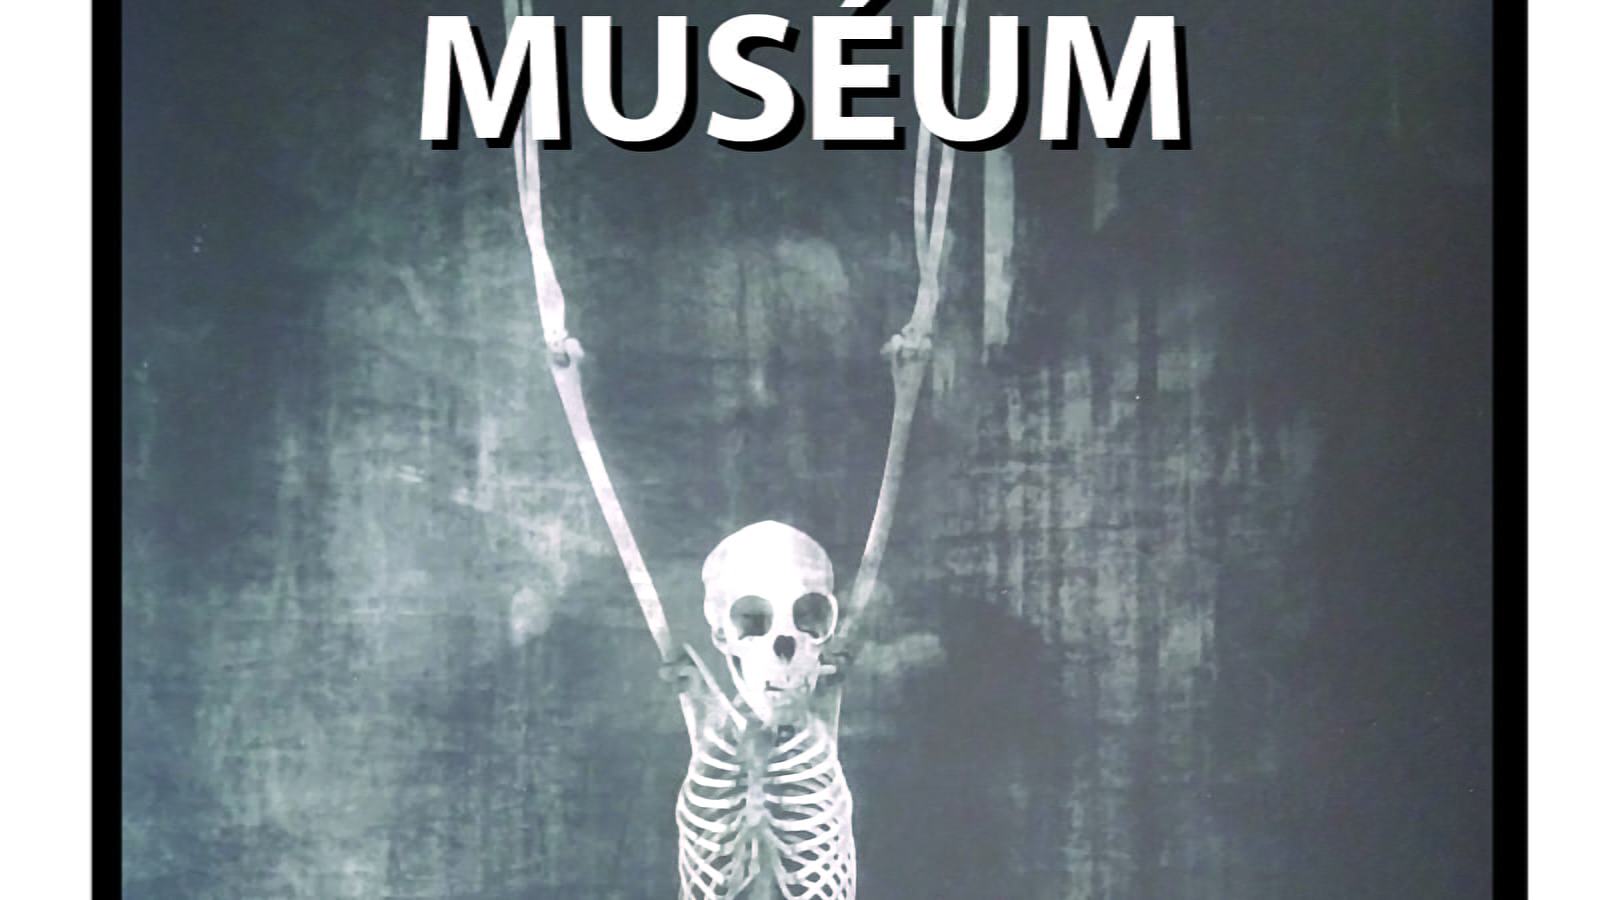 Exposition photos de Vincent Descotils 'muséem' Photographies noir et blanc galerie d'anatomie comparée musée d'histoire naturelle Paris.